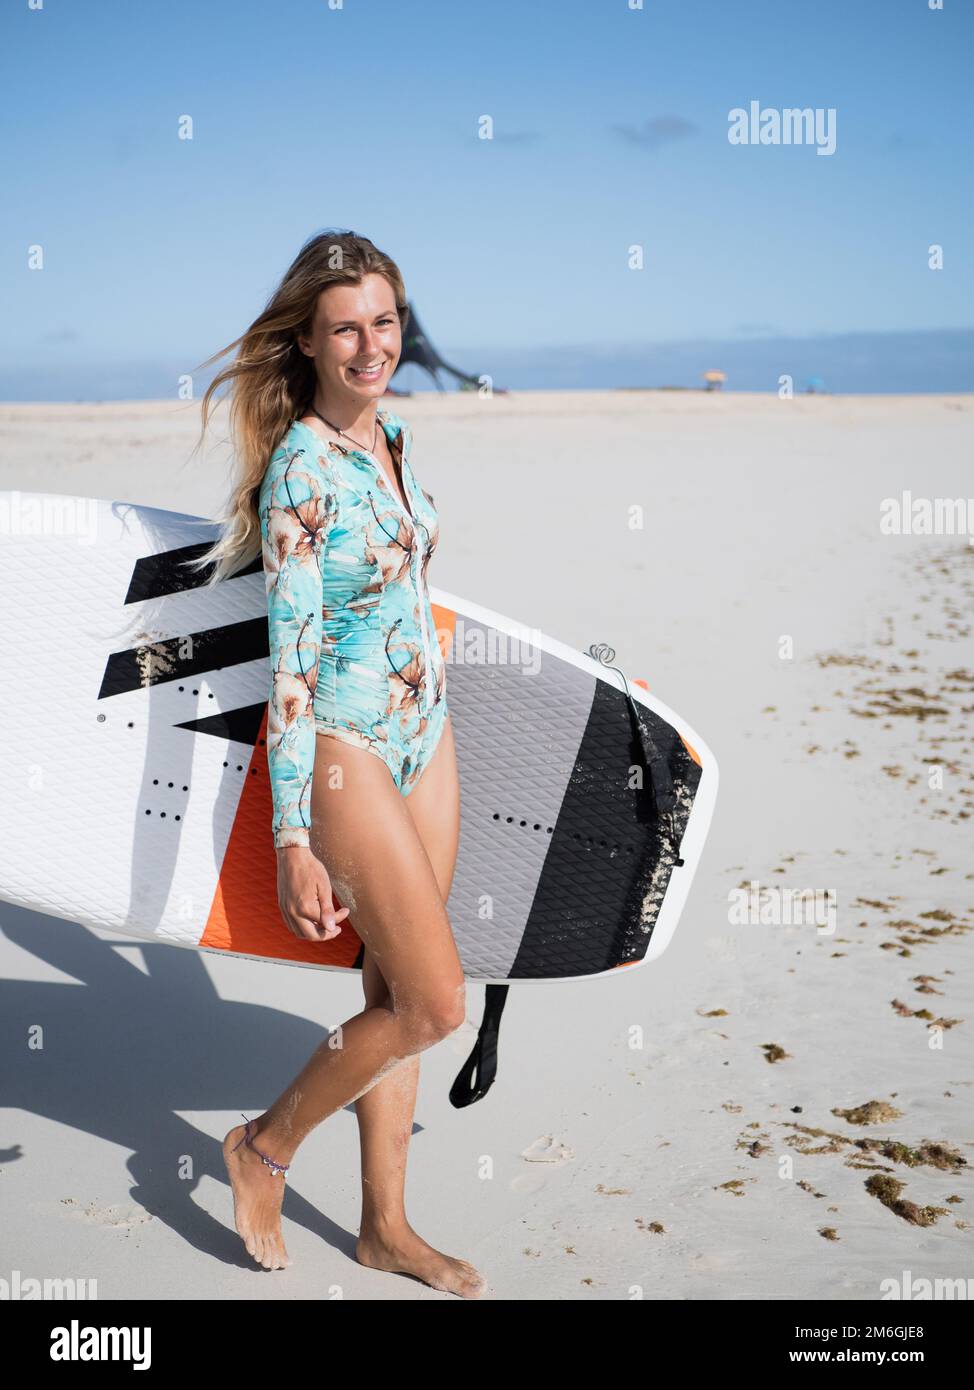 Junge, kaukasische Surferin mit Tragflächensurfbrett am Strand Stockfoto